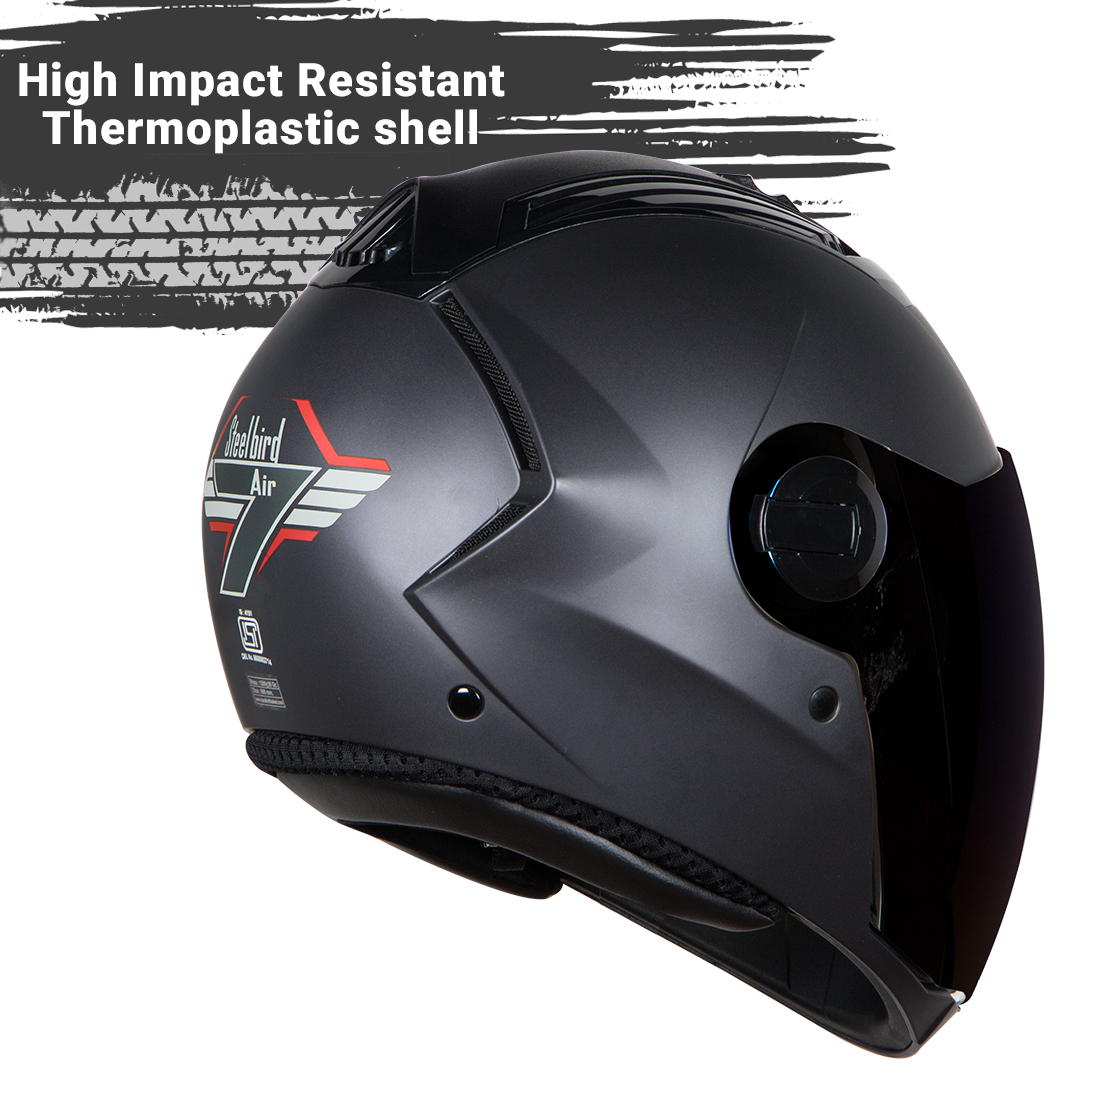 Steelbird SBA-2 7Wings ISI Certified Full Face Helmet (Matt H.Grey With Chrome Blue Visor)